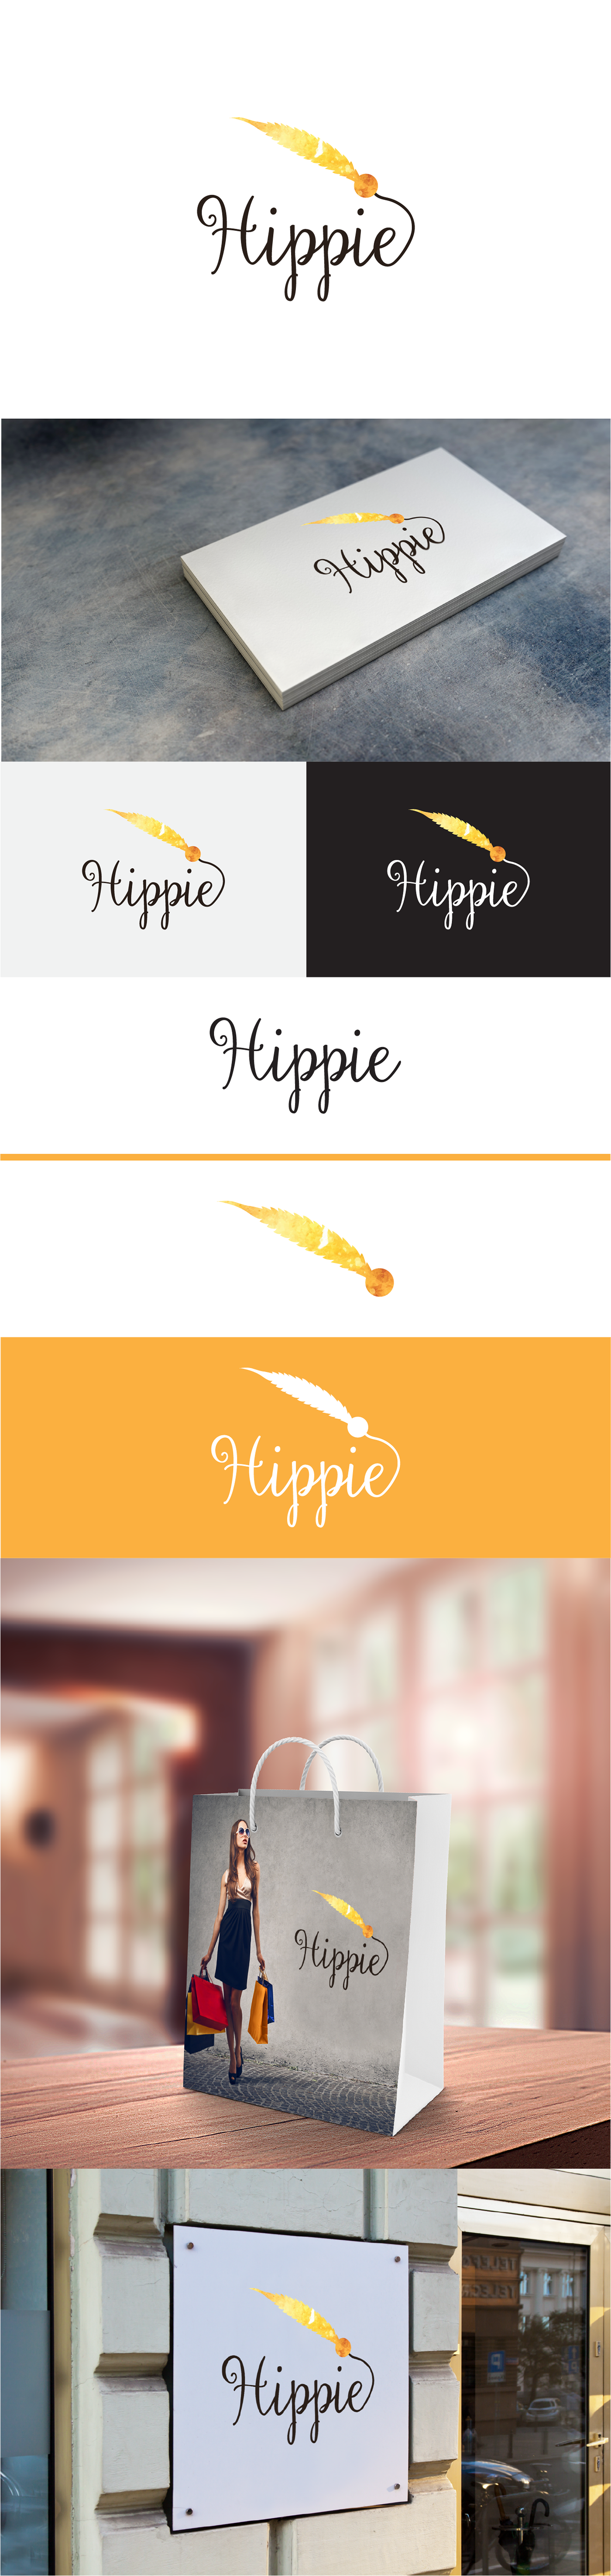 hippie Style logo creative designs graphic brand Fur orange Love